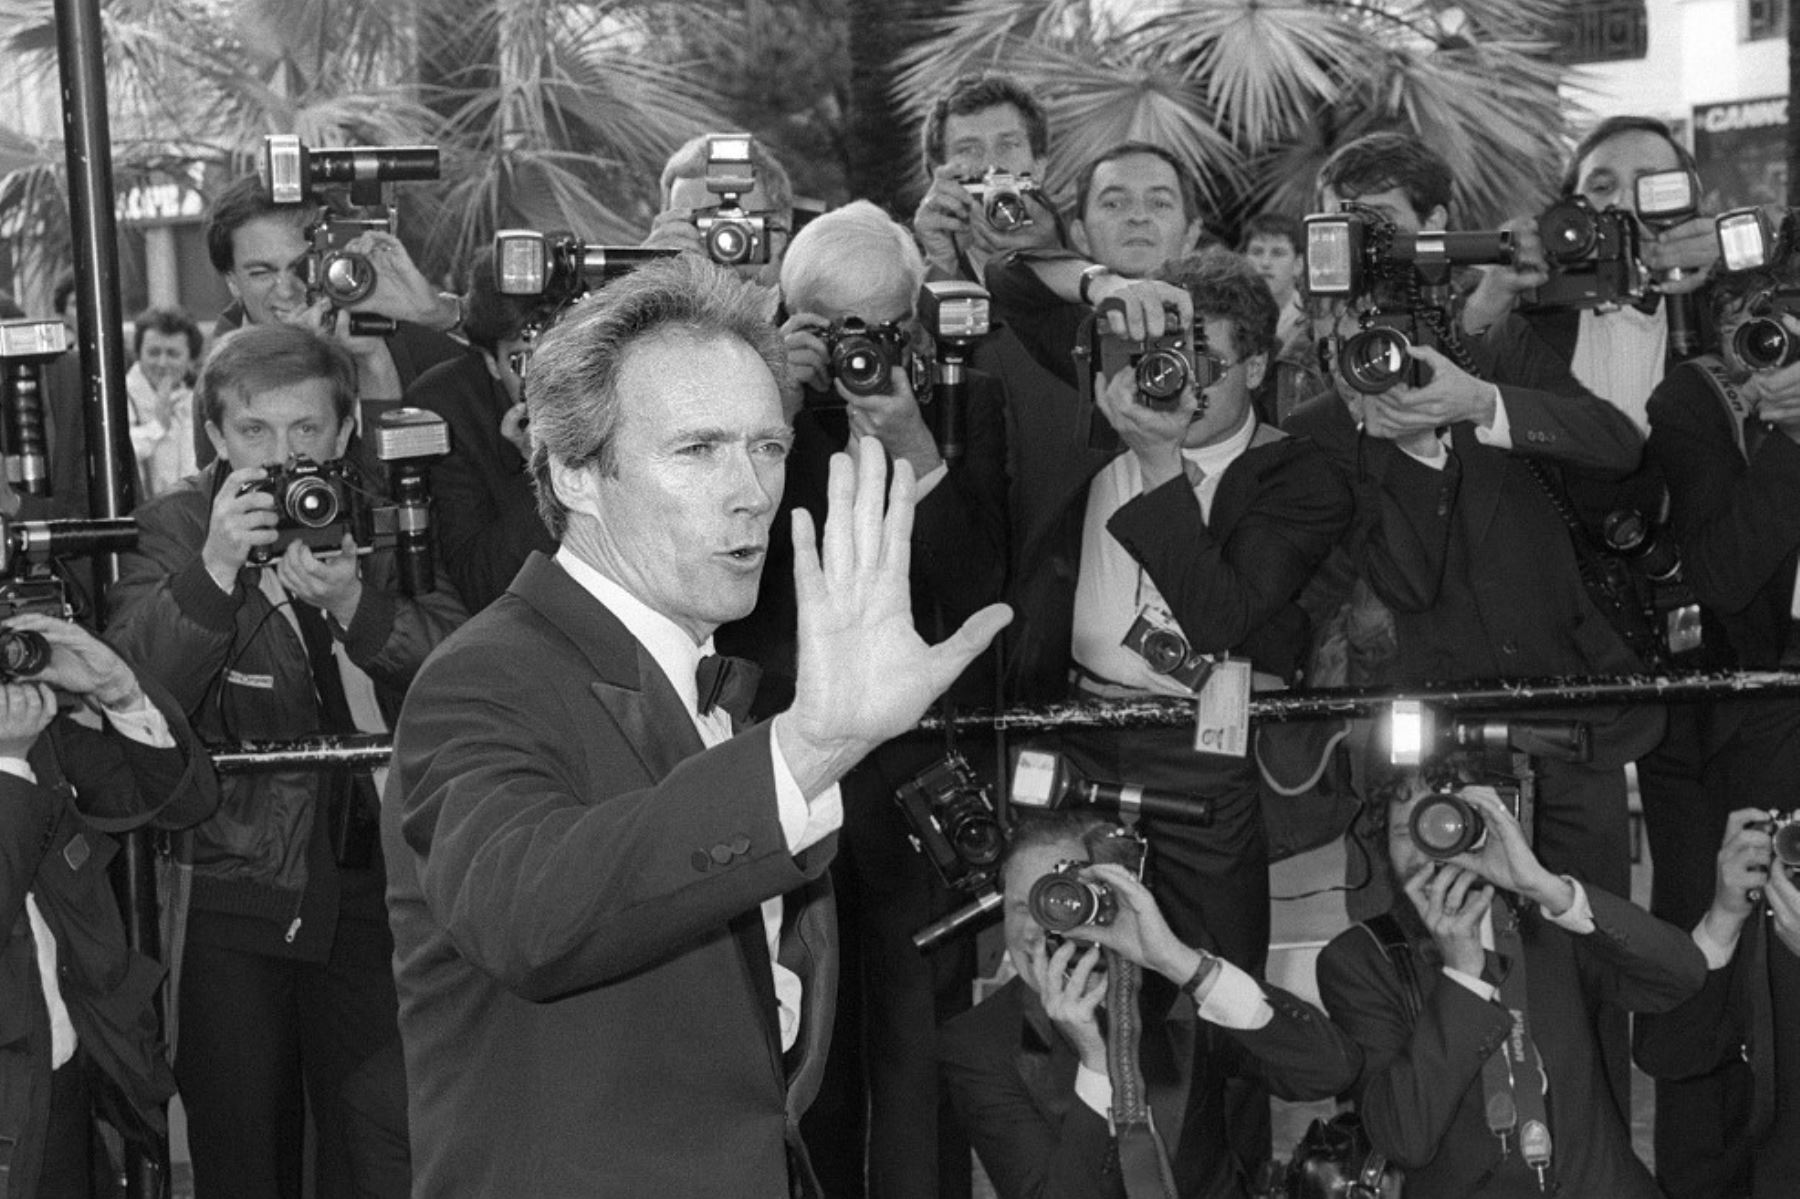 El director de cine estadounidense Clint Eastwood llega para la proyección de su película "Pale Rider", el 14 de mayo de 1985, durante el Festival Internacional de Cine de Cannes. Foto: AFP